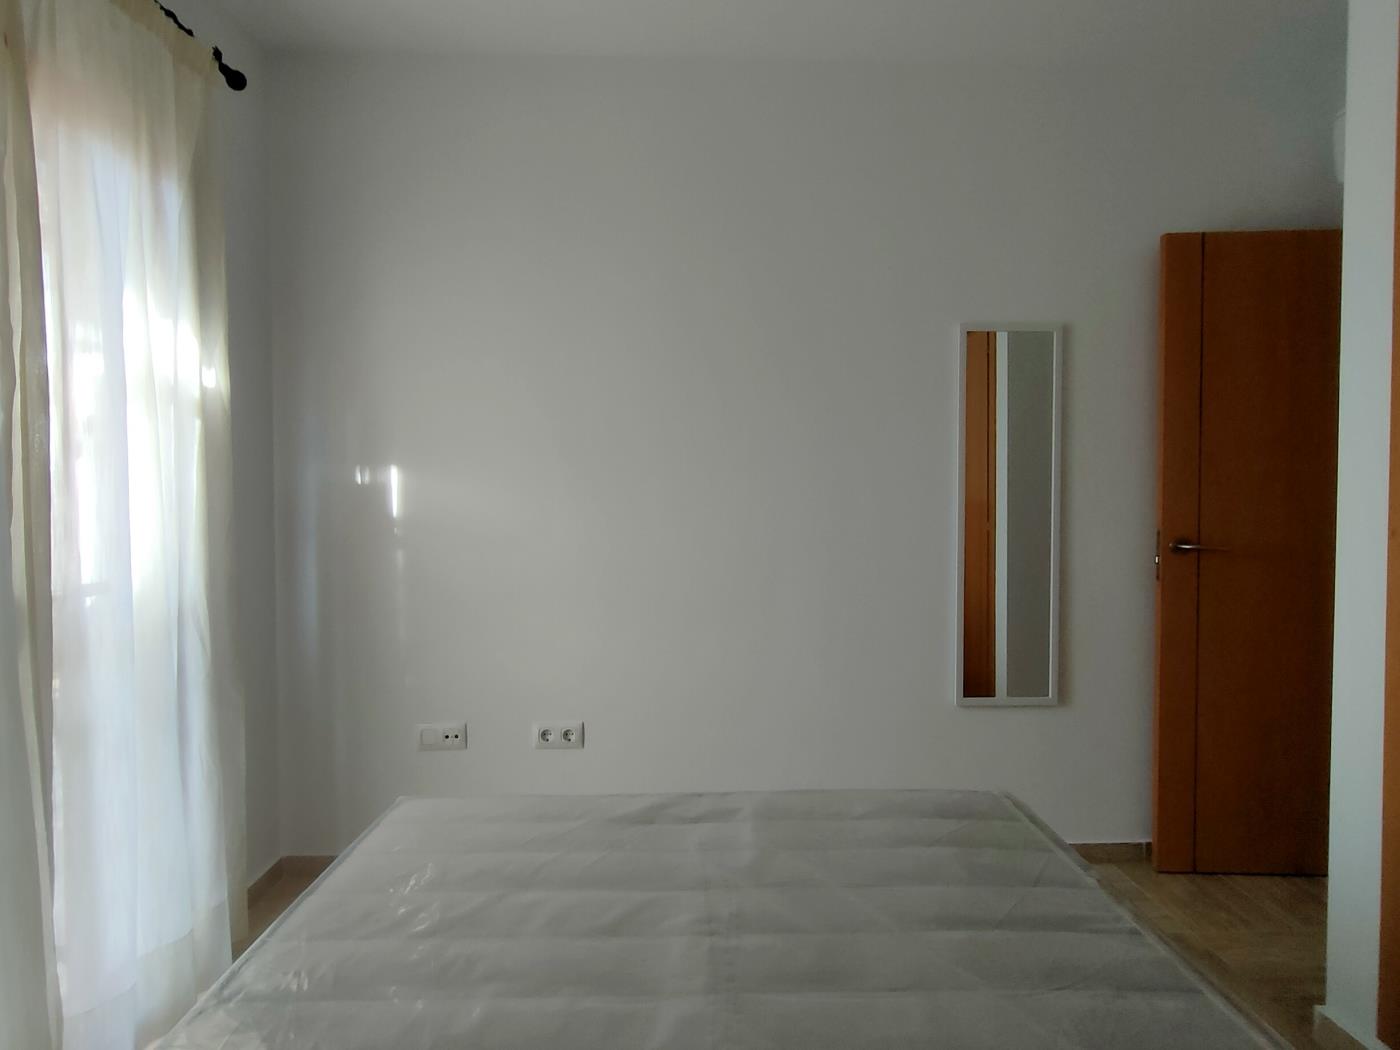 Ref B1. Apartamento de dos dormitorios en planta baja en Chiclana de la Frontera